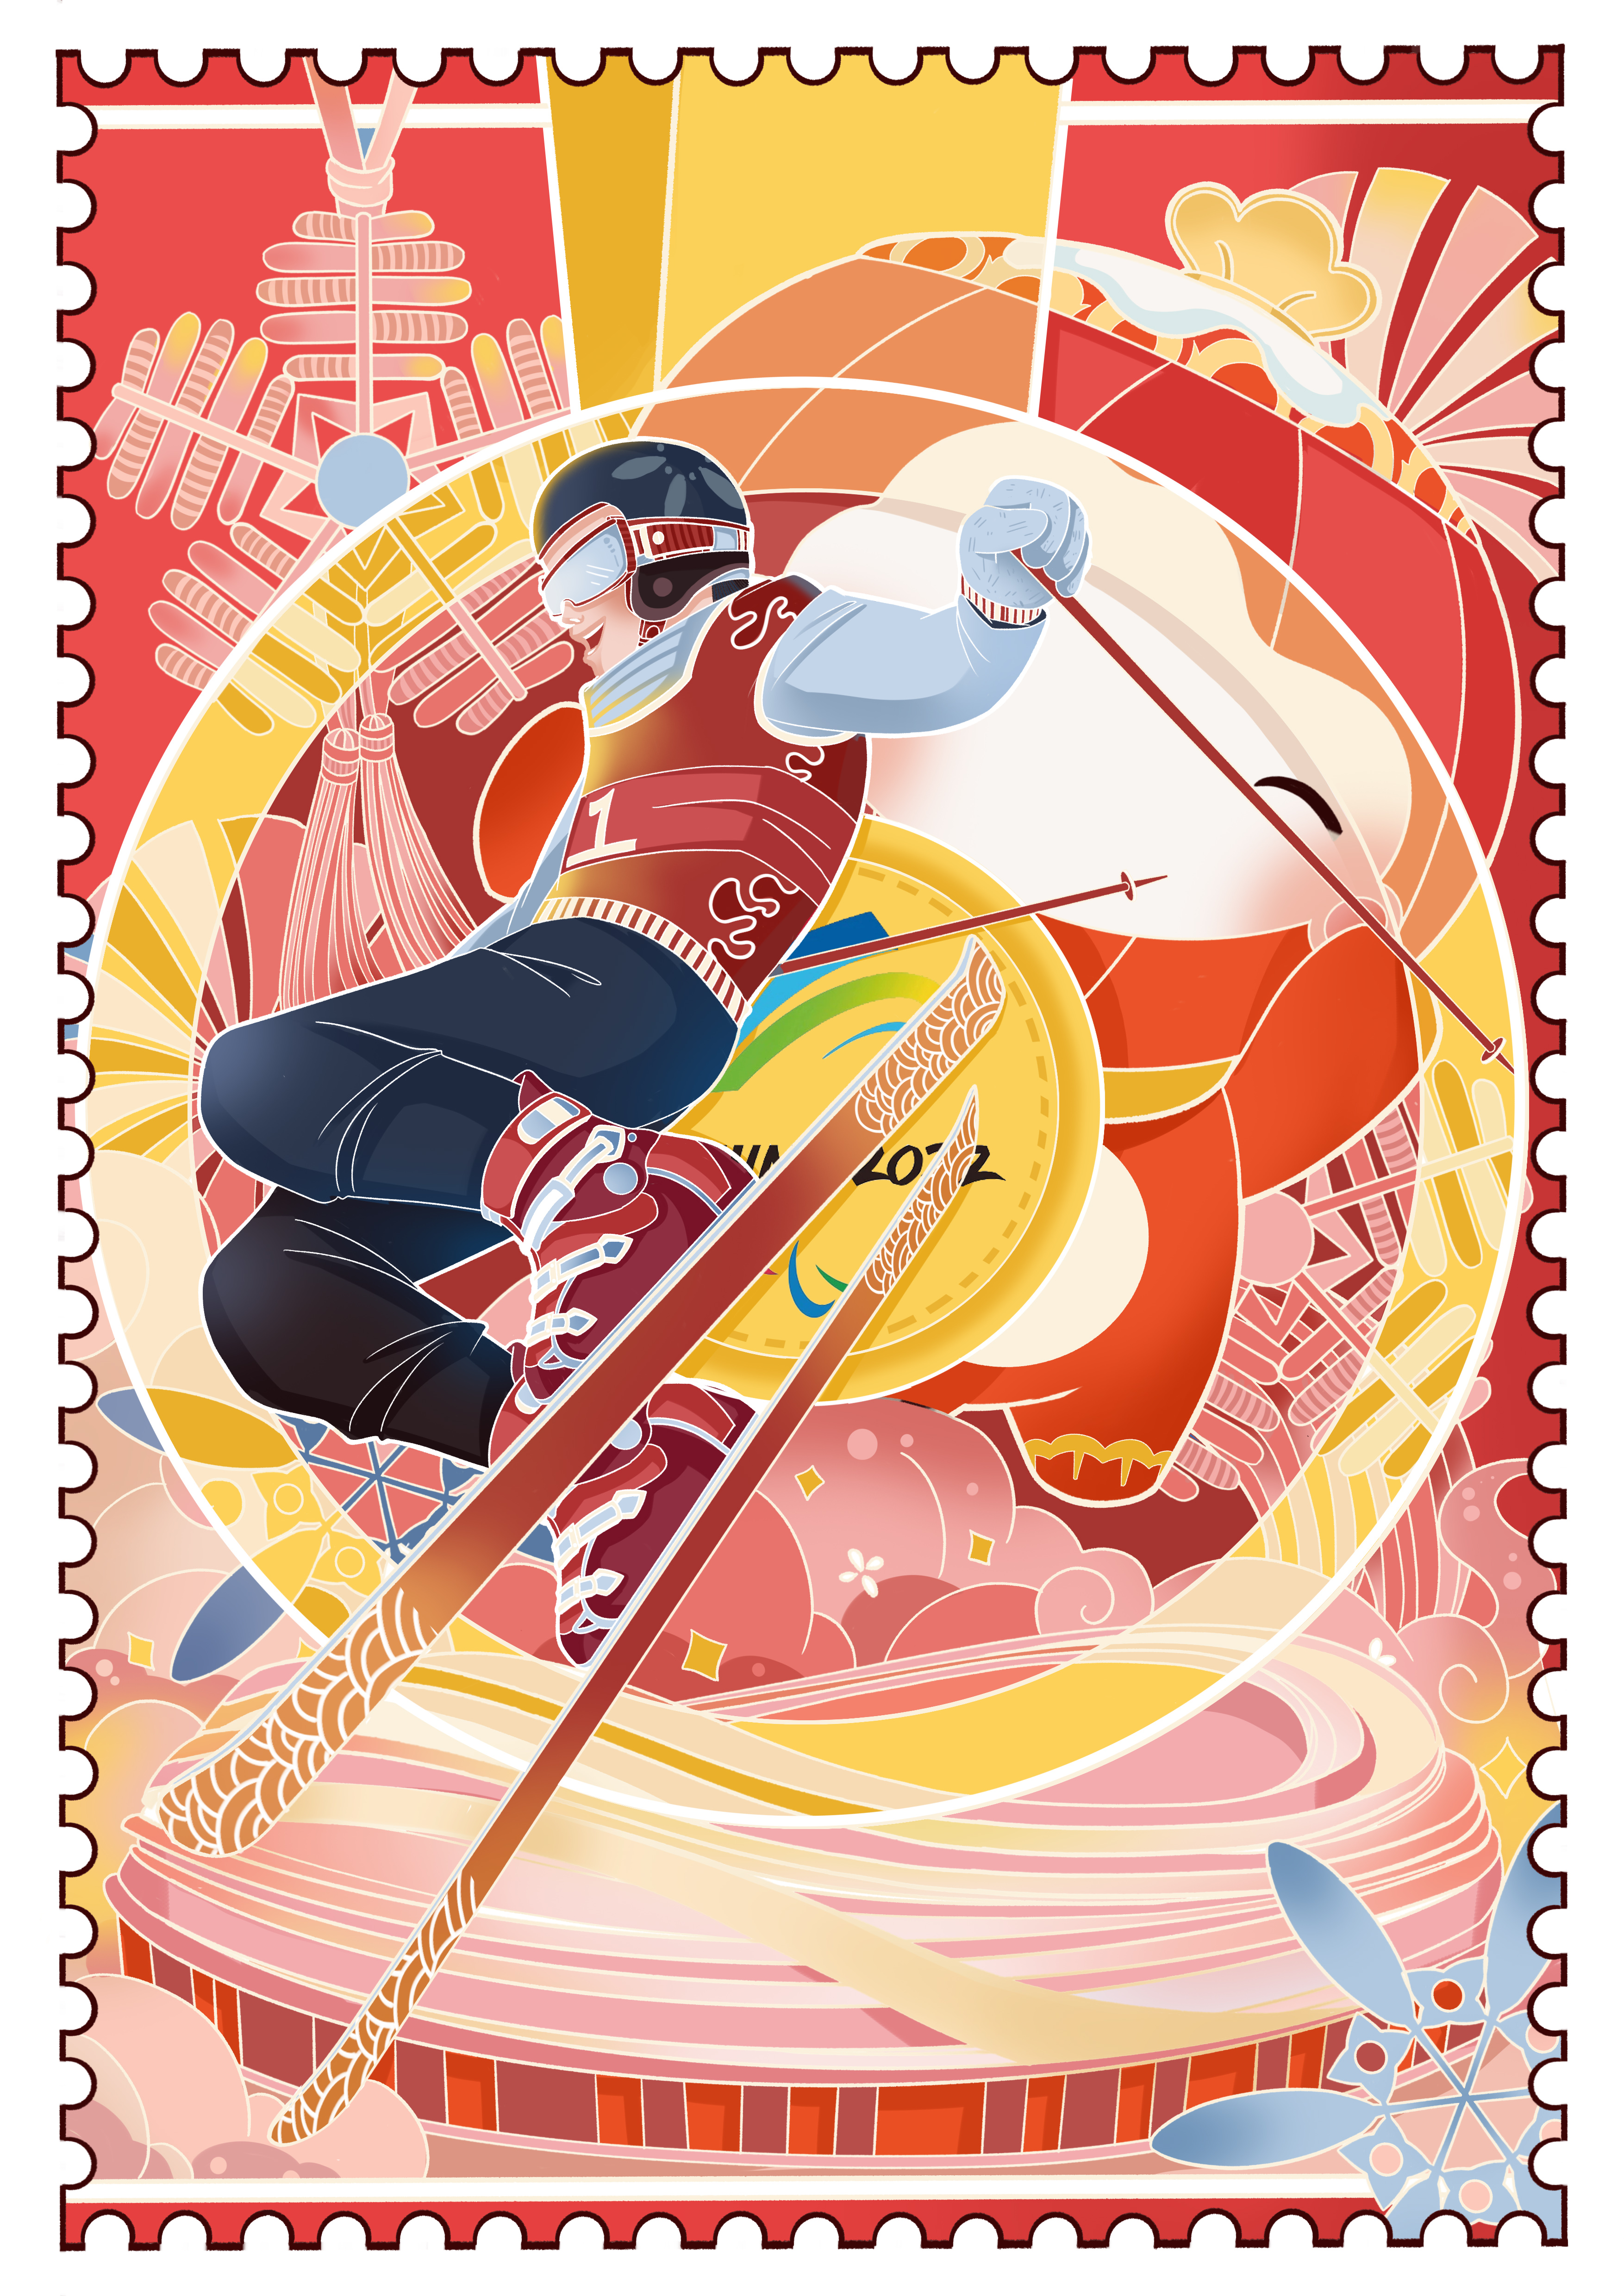 2022冬奥宣传海报 插画图片